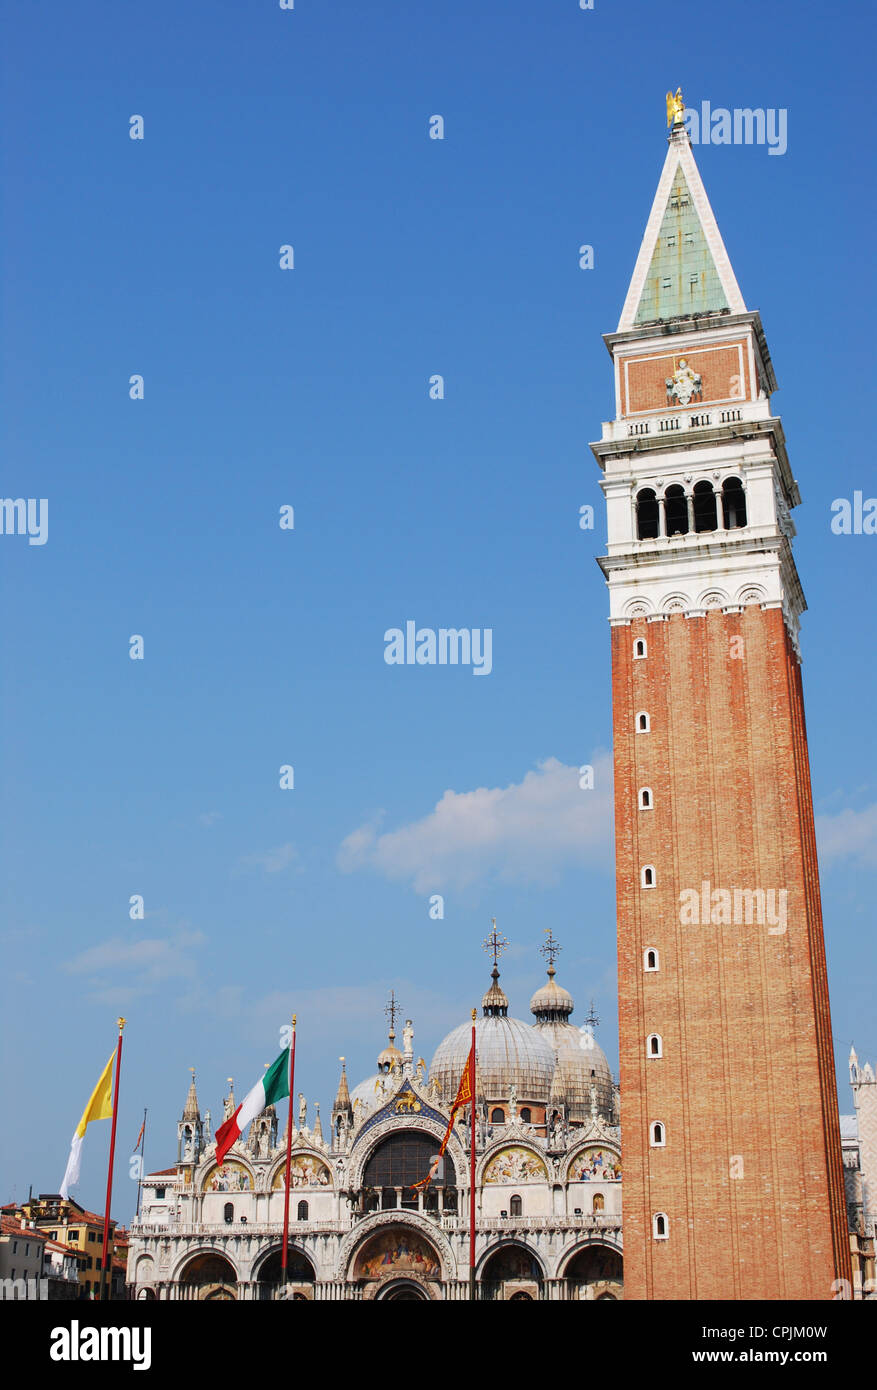 La famosa catedral de San Marcos y torre campanario, Venecia, Italia Foto de stock